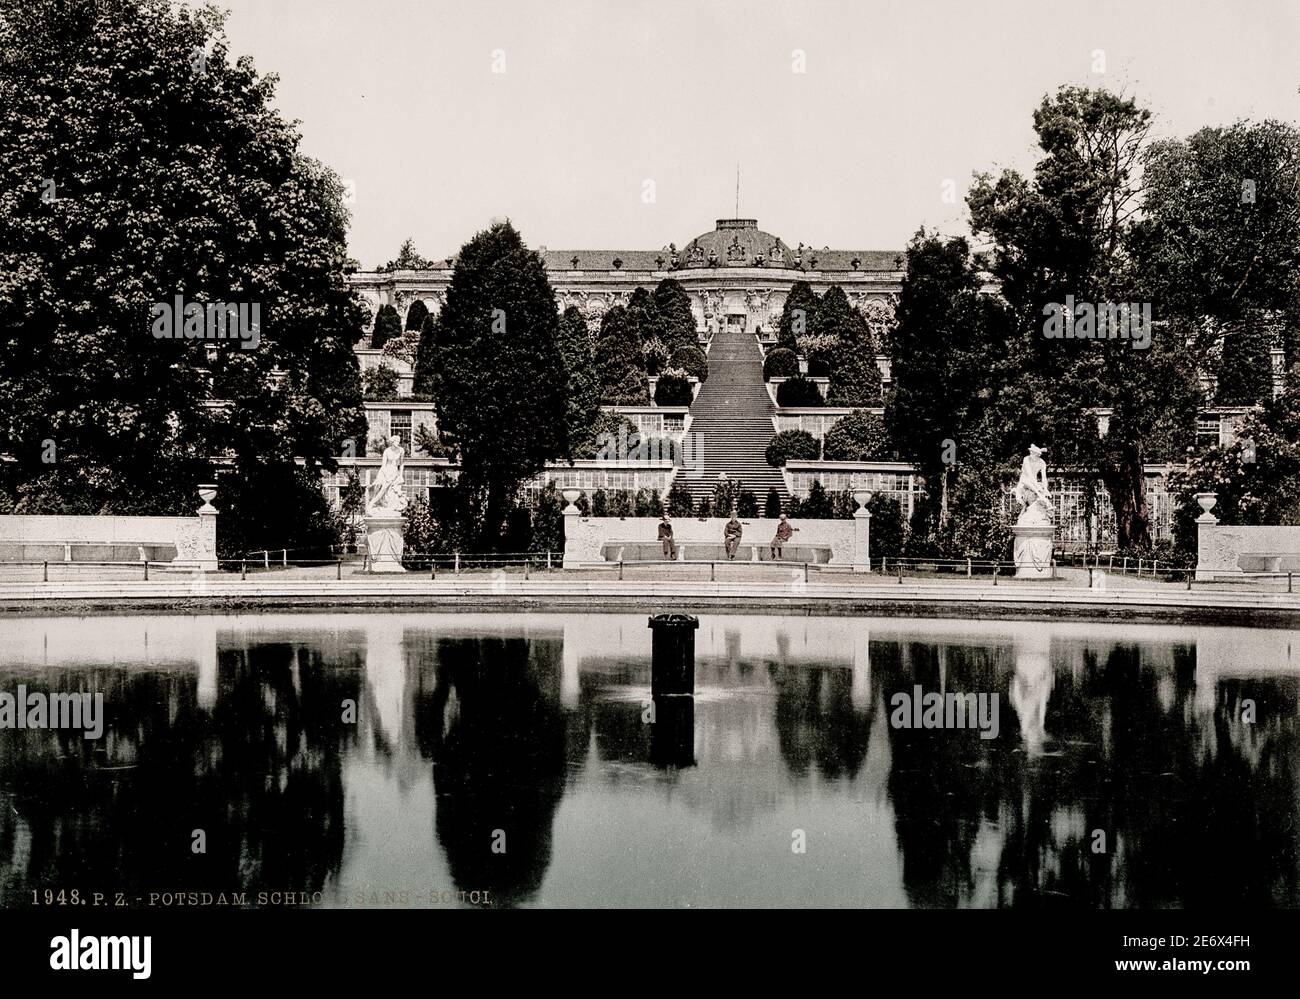 Jahrgang 19. Jahrhundert / 1900 Foto: Sanssouci, ein historisches Gebäude in Potsdam, bei Berlin. Erbaut von Friedrich dem Großen, König von Preußen, als Sommerpalast. Stockfoto